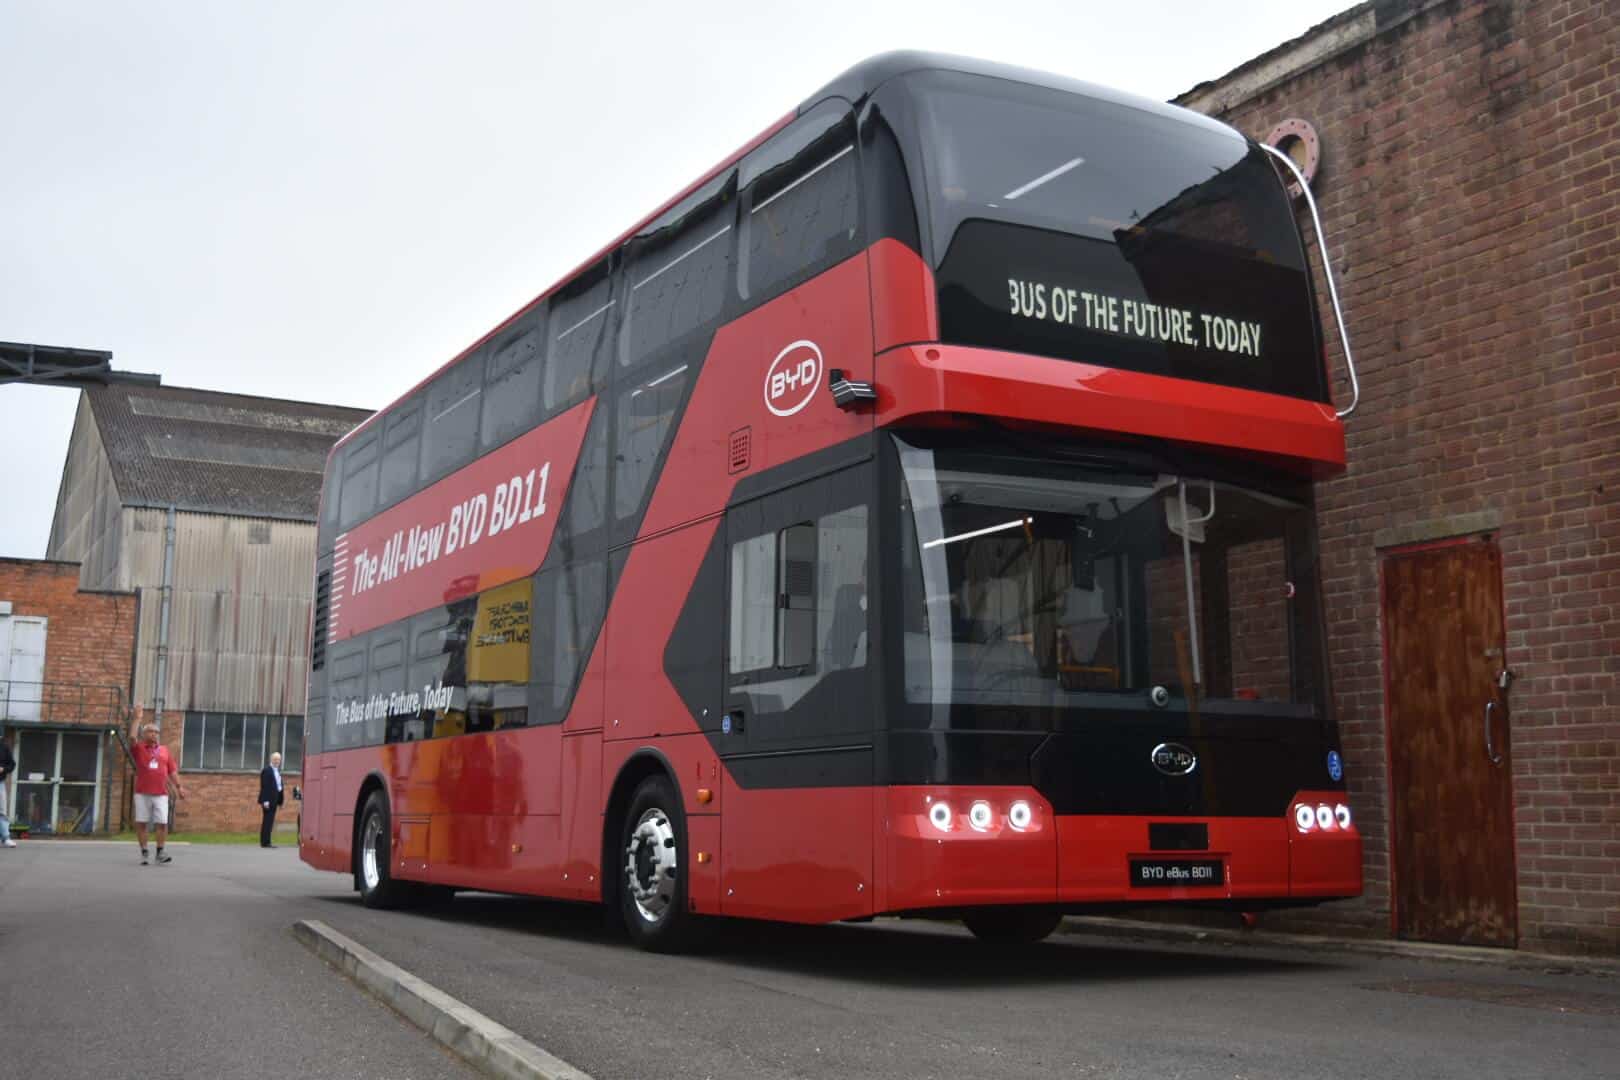 Автобус BYD с аккумулятором мощностью 532 кВтч может стать следующим лондонским красным автобусом